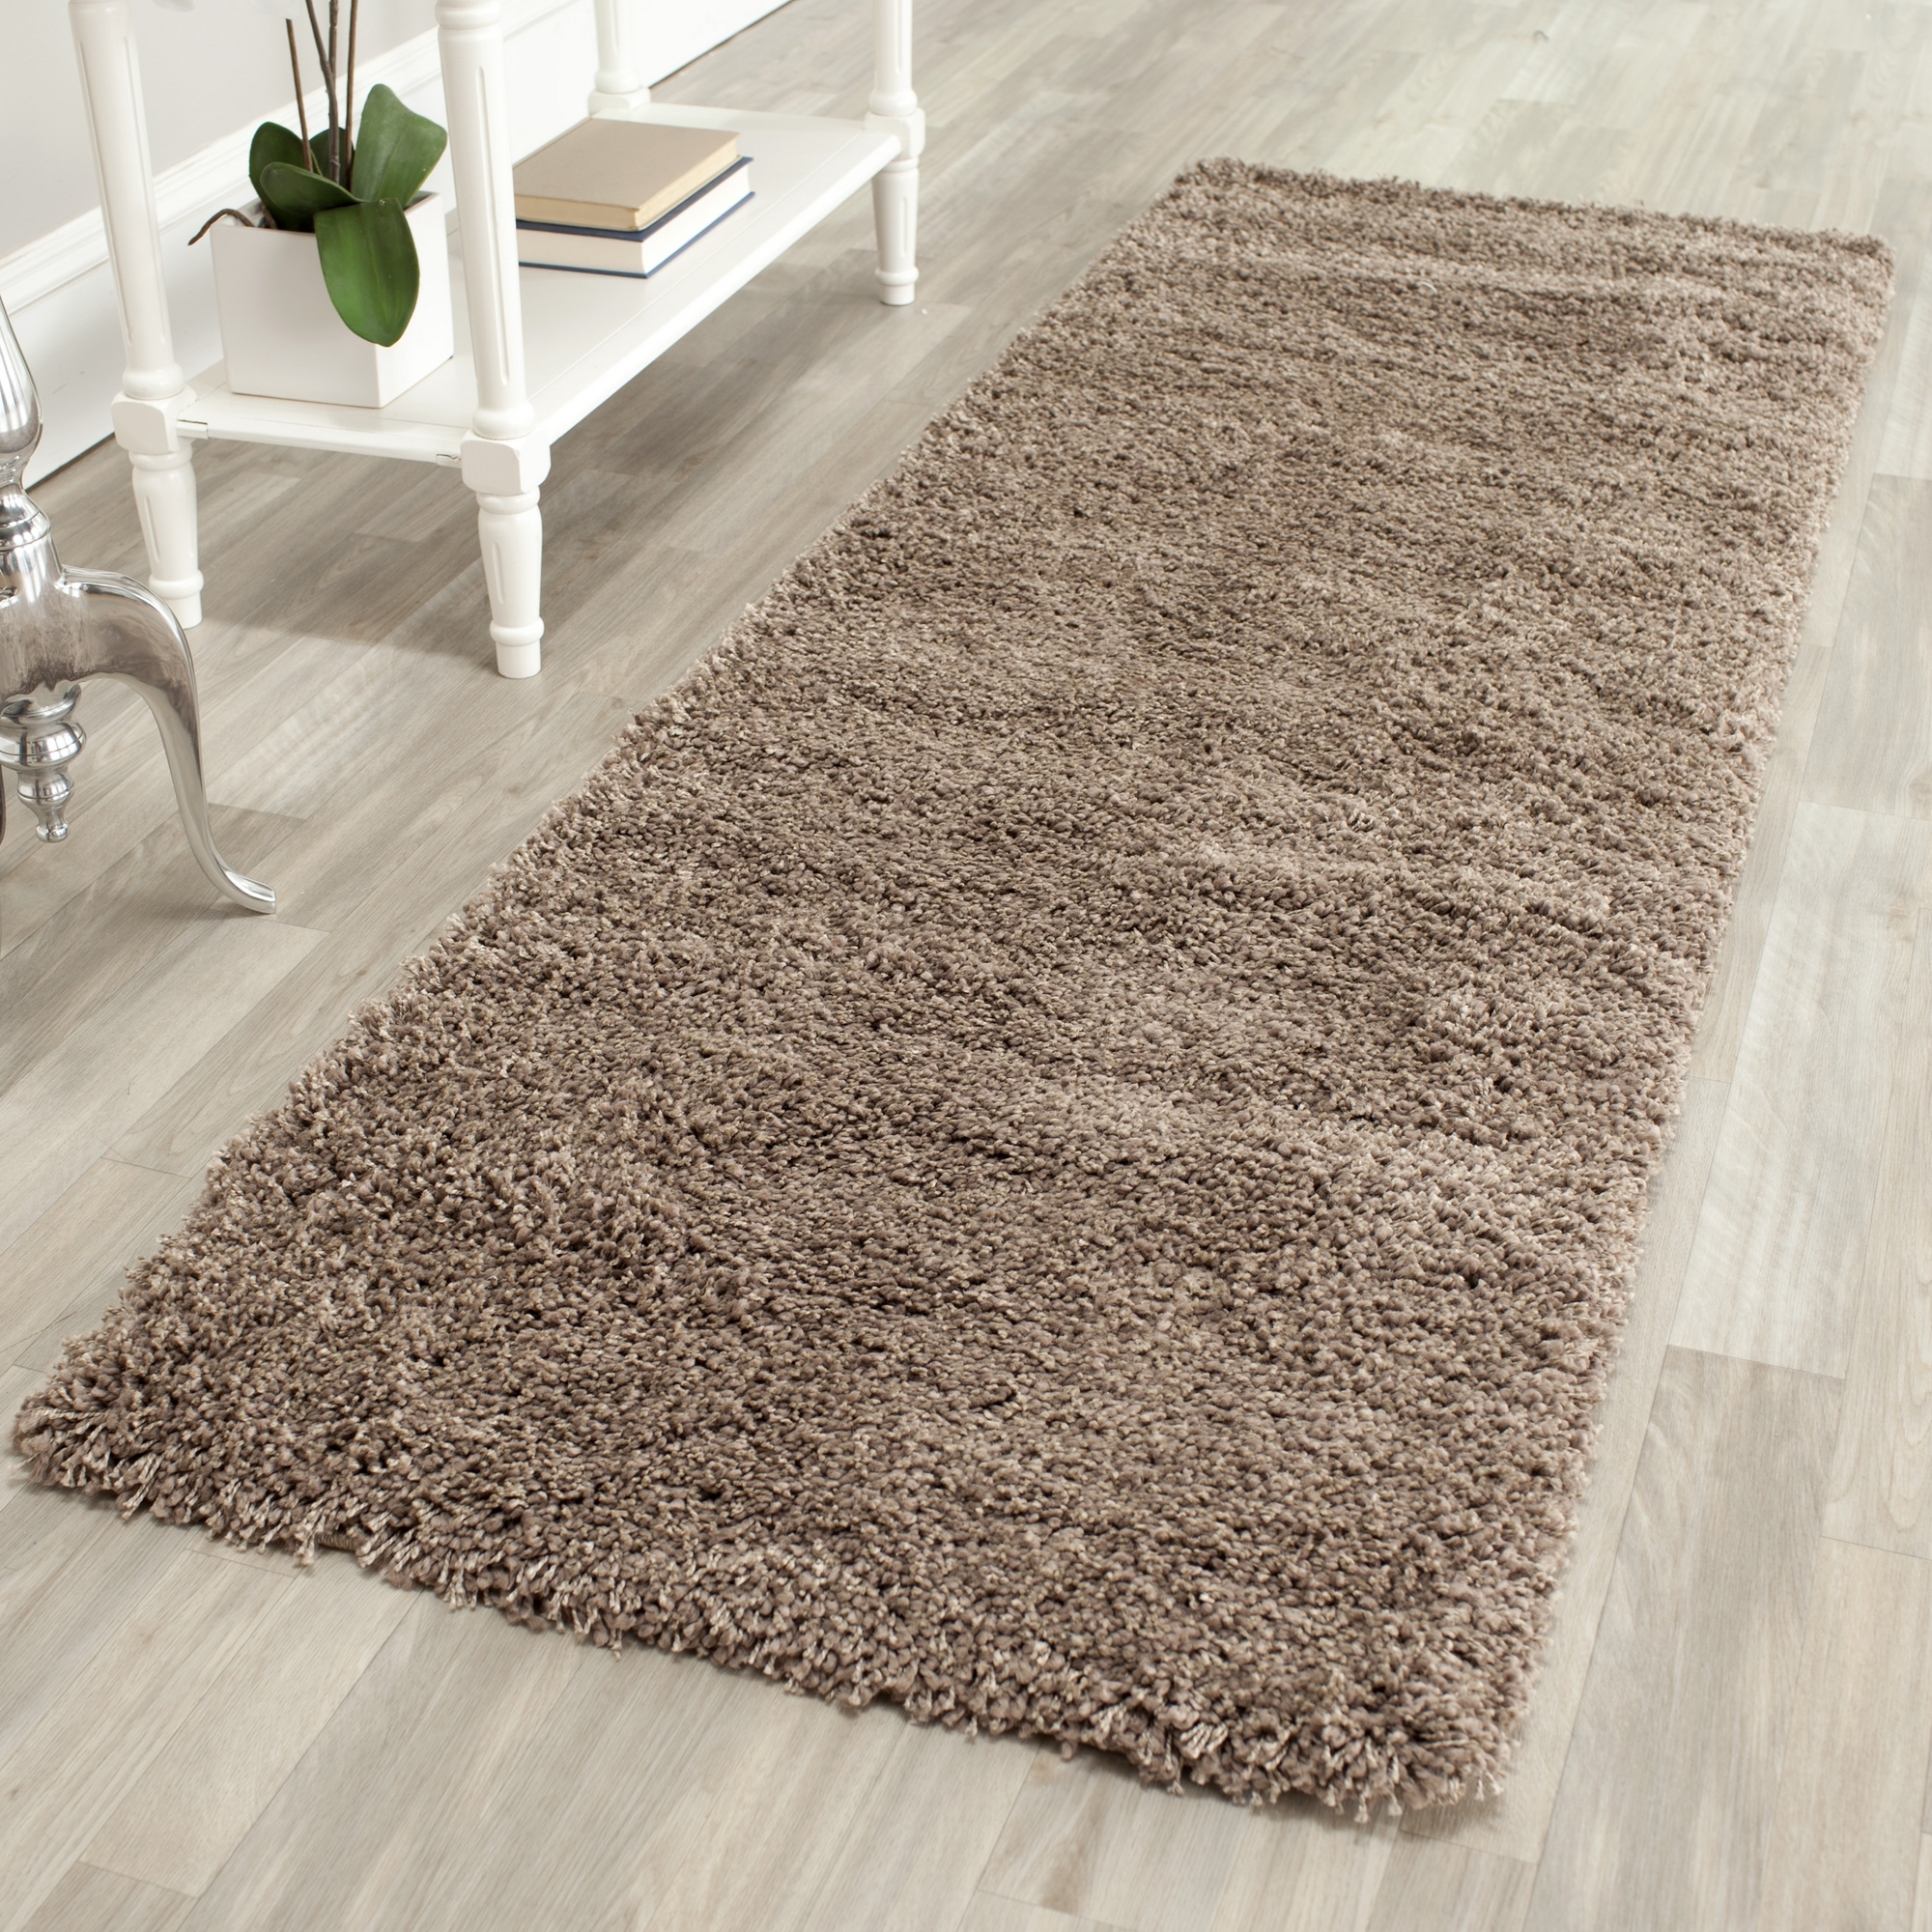 Beautiful Safavieh-Power-Loomed-TAUPE-Plush-Shag-Area-Rugs- plush area rugs